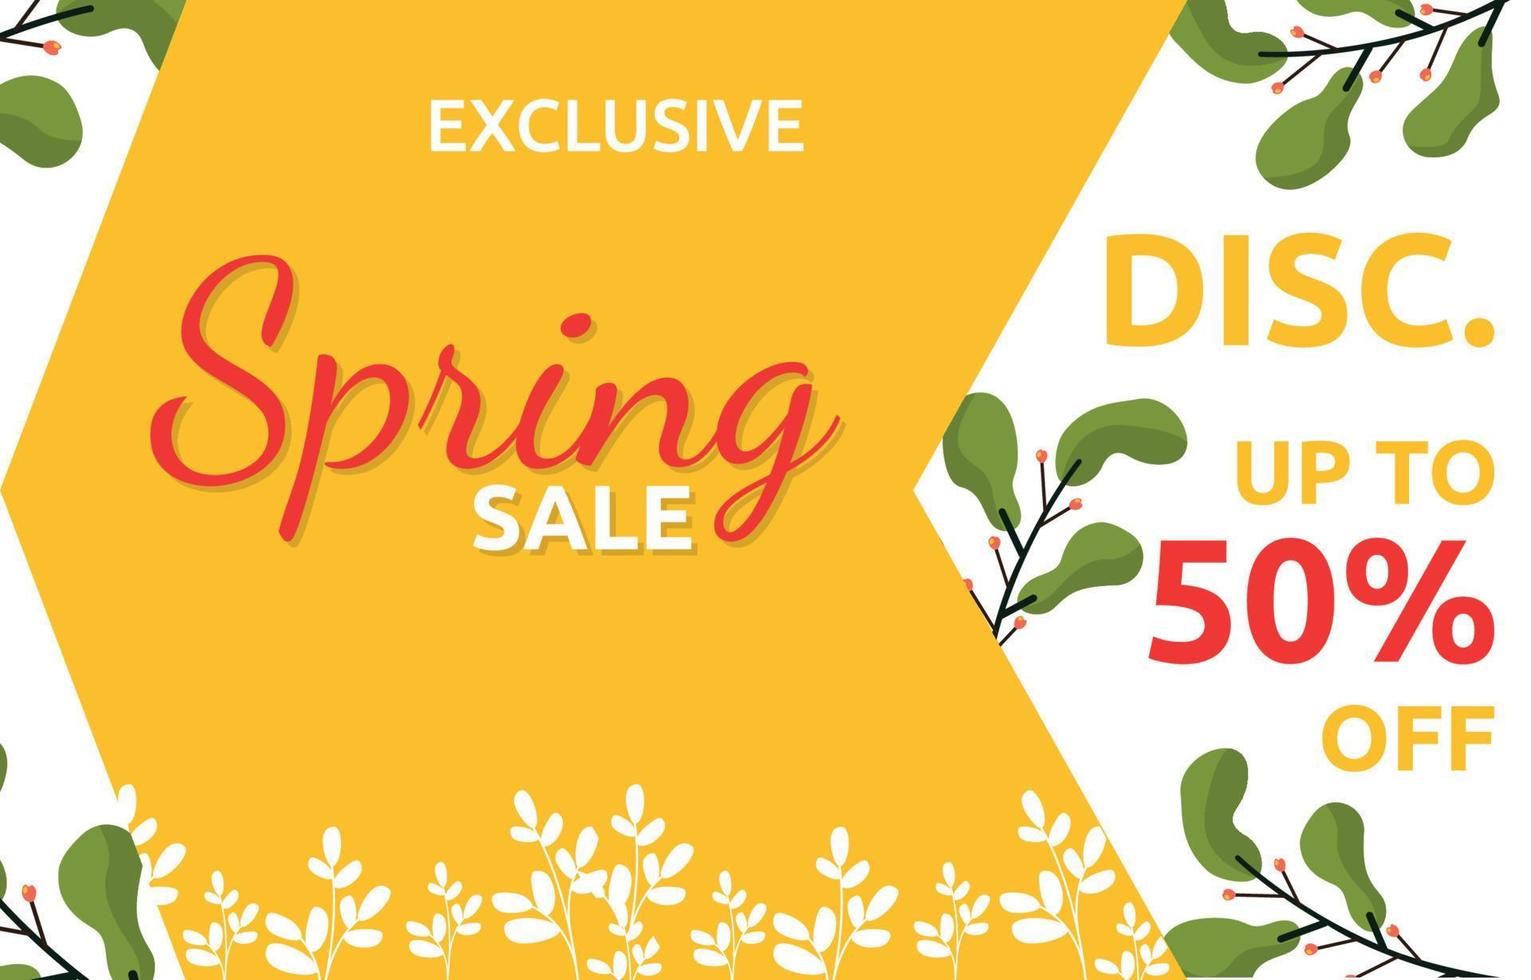 venda exclusiva de primavera flor floral temporada marketing banner negócio vetor